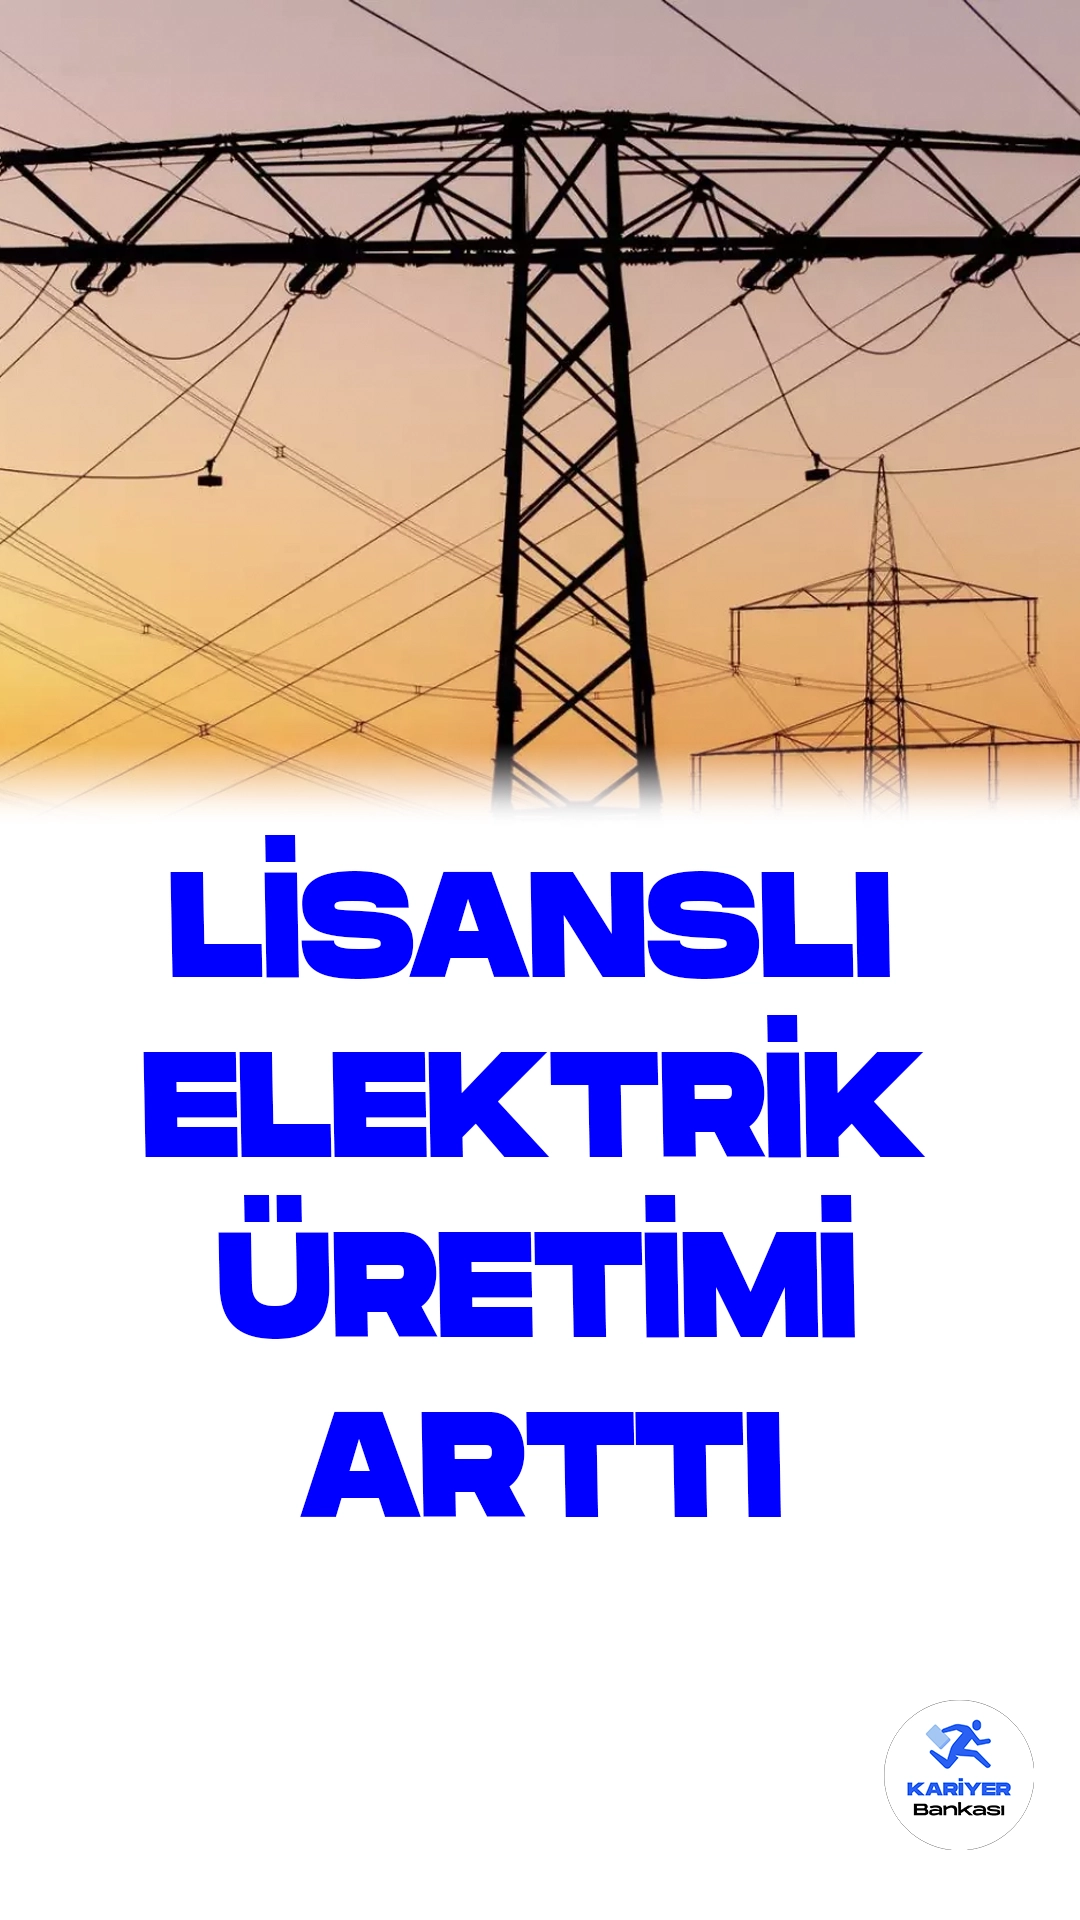 Türkiye'nin Lisanslı Elektrik Üretimi Temmuz'da Yükseldi.Türkiye'de lisanslı elektrik üretimi, temmuz ayında geçen yılın aynı dönemine göre yüzde 8,93 artarak 29 milyon 622 bin 716 megavatsaat seviyesine yükseldi.